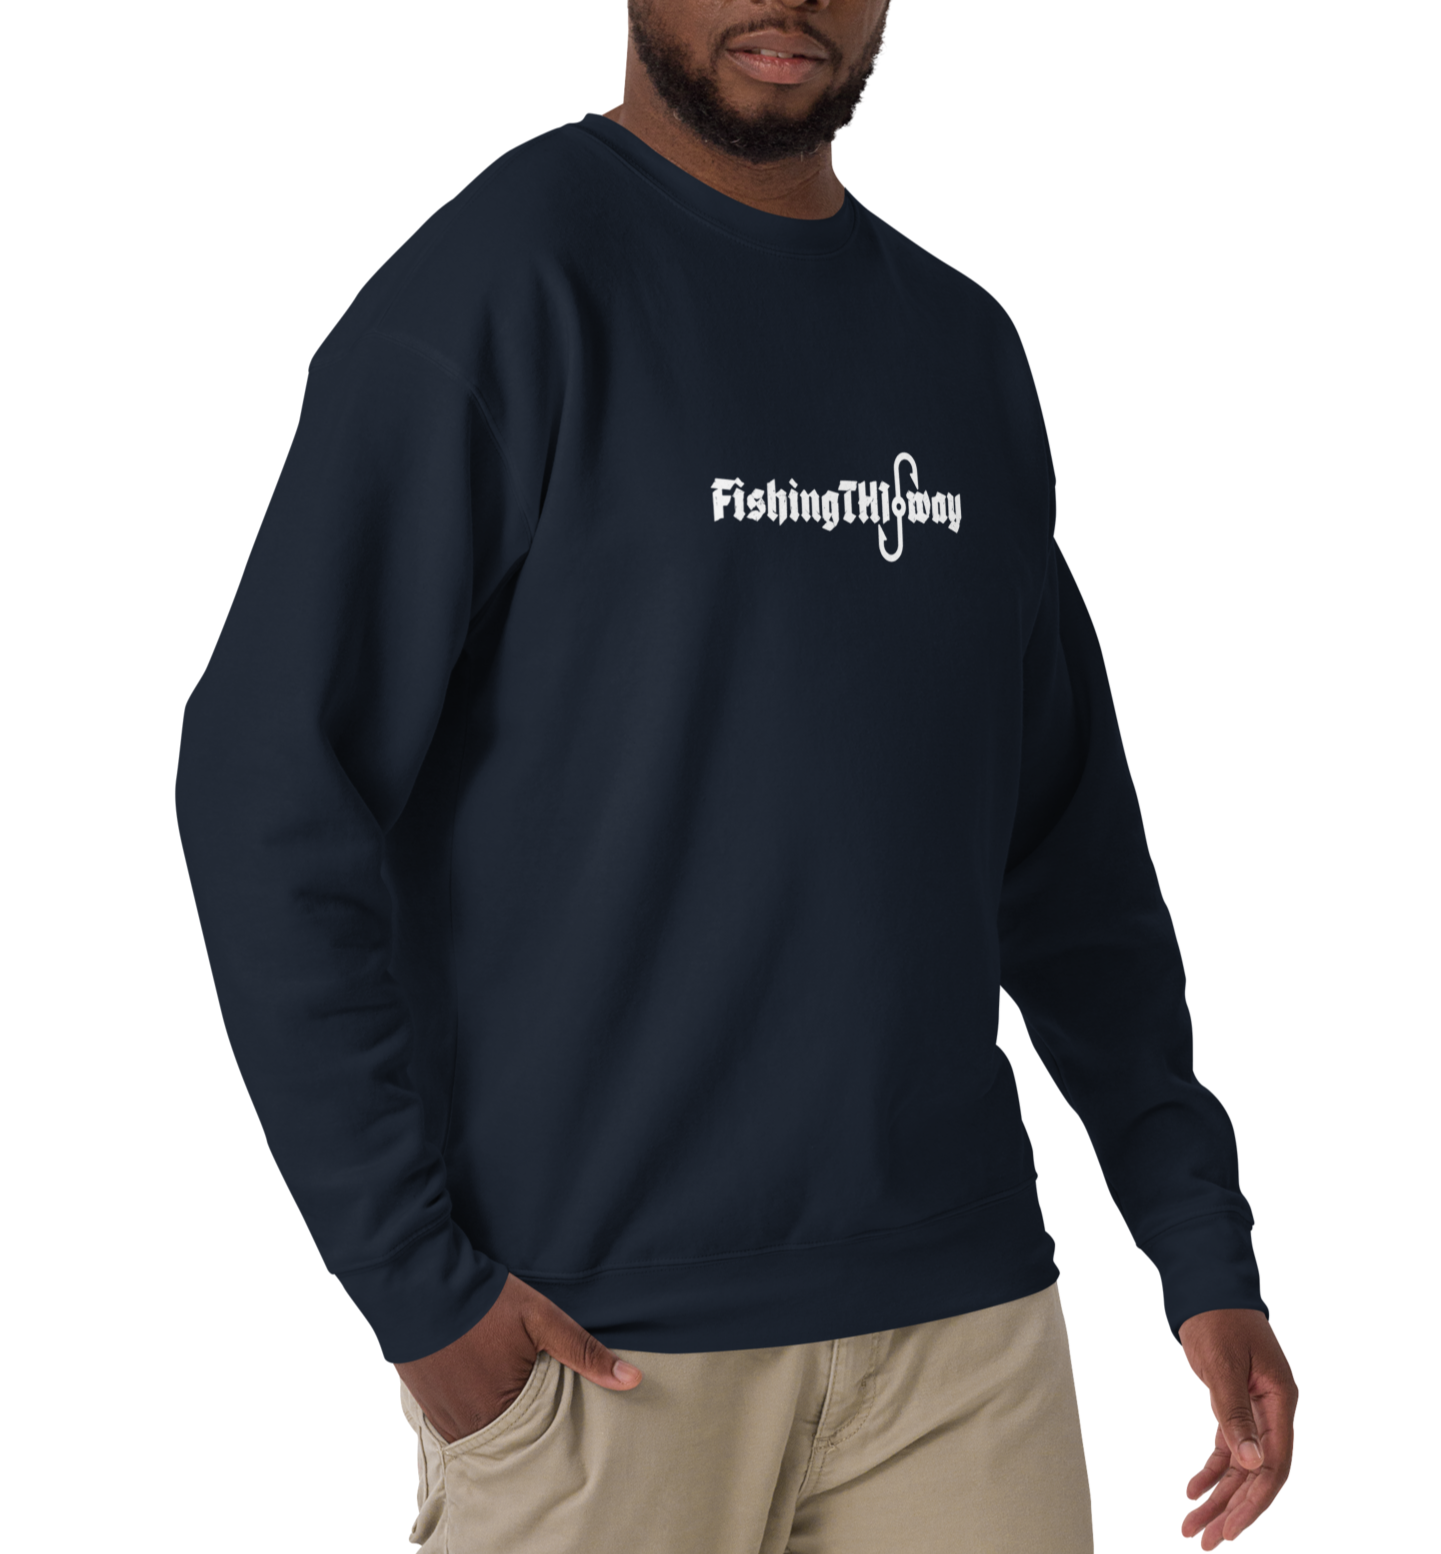 FTW STAPLE - Unisex Premium Sweatshirt